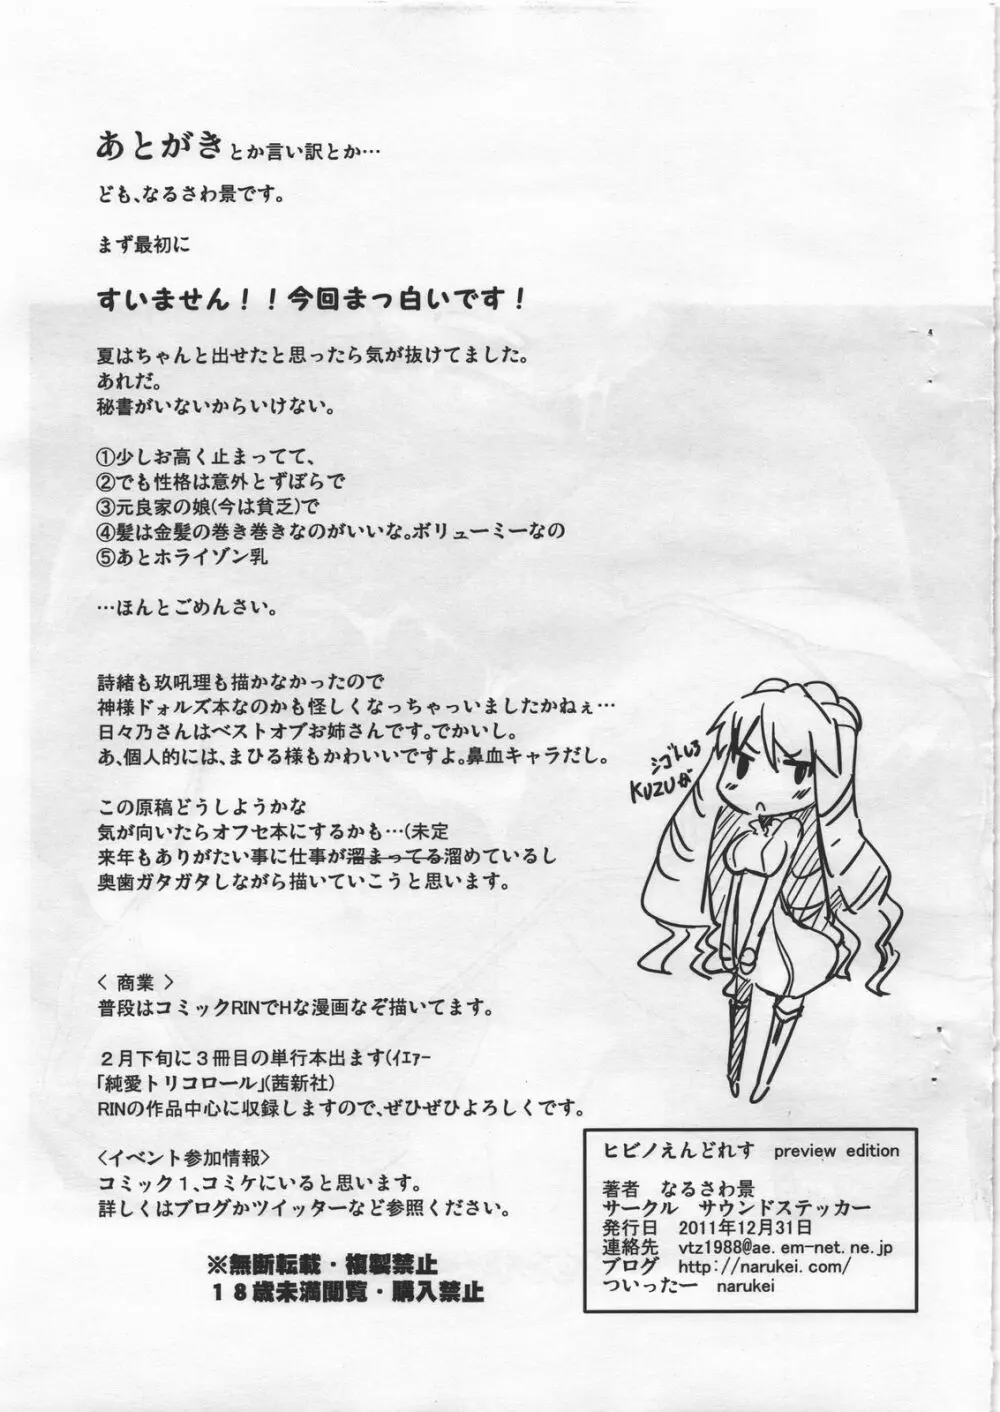 ヒビノえんどれす preview edition Page.23